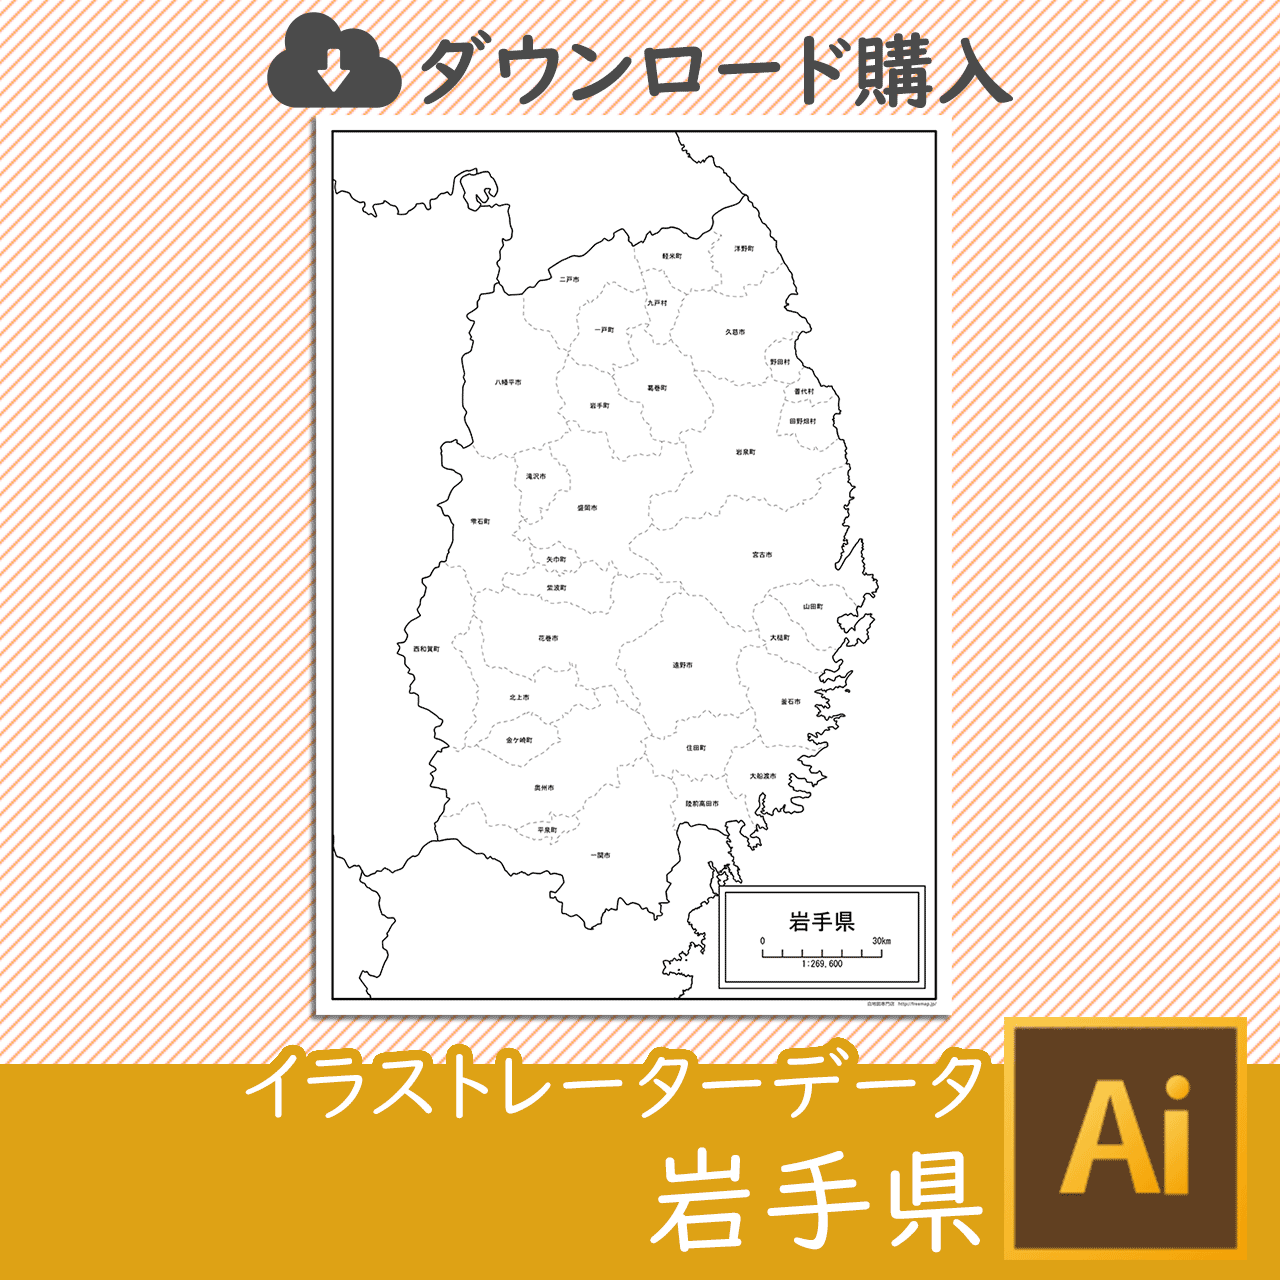 岩手県のaiデータのサムネイル画像